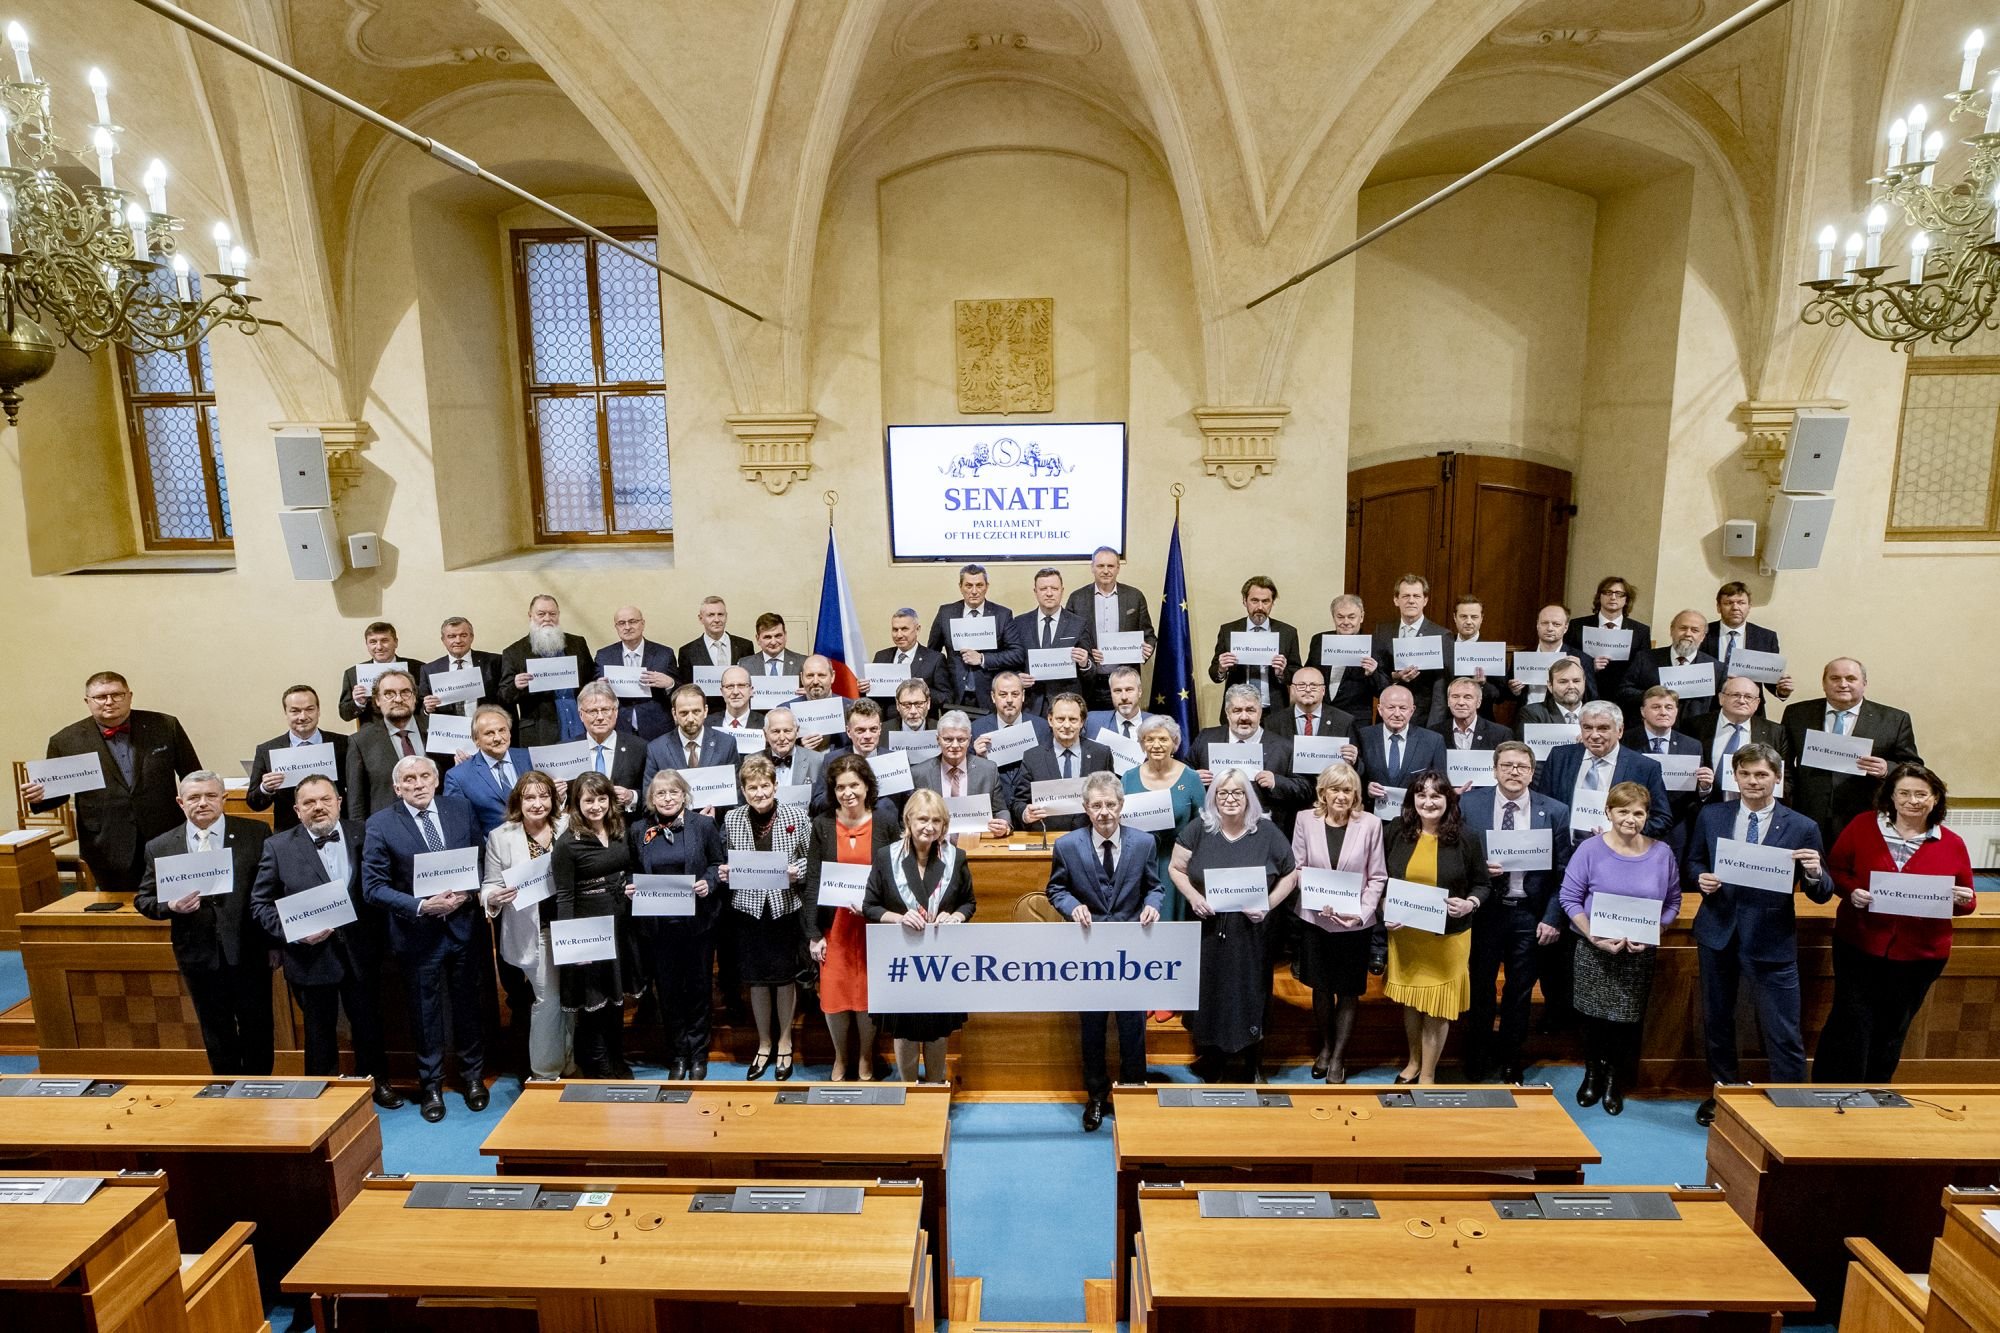 Senát si připomněl Den památky obětí holocaustu vzpomínkovým setkáním i kampaní #WeRemember